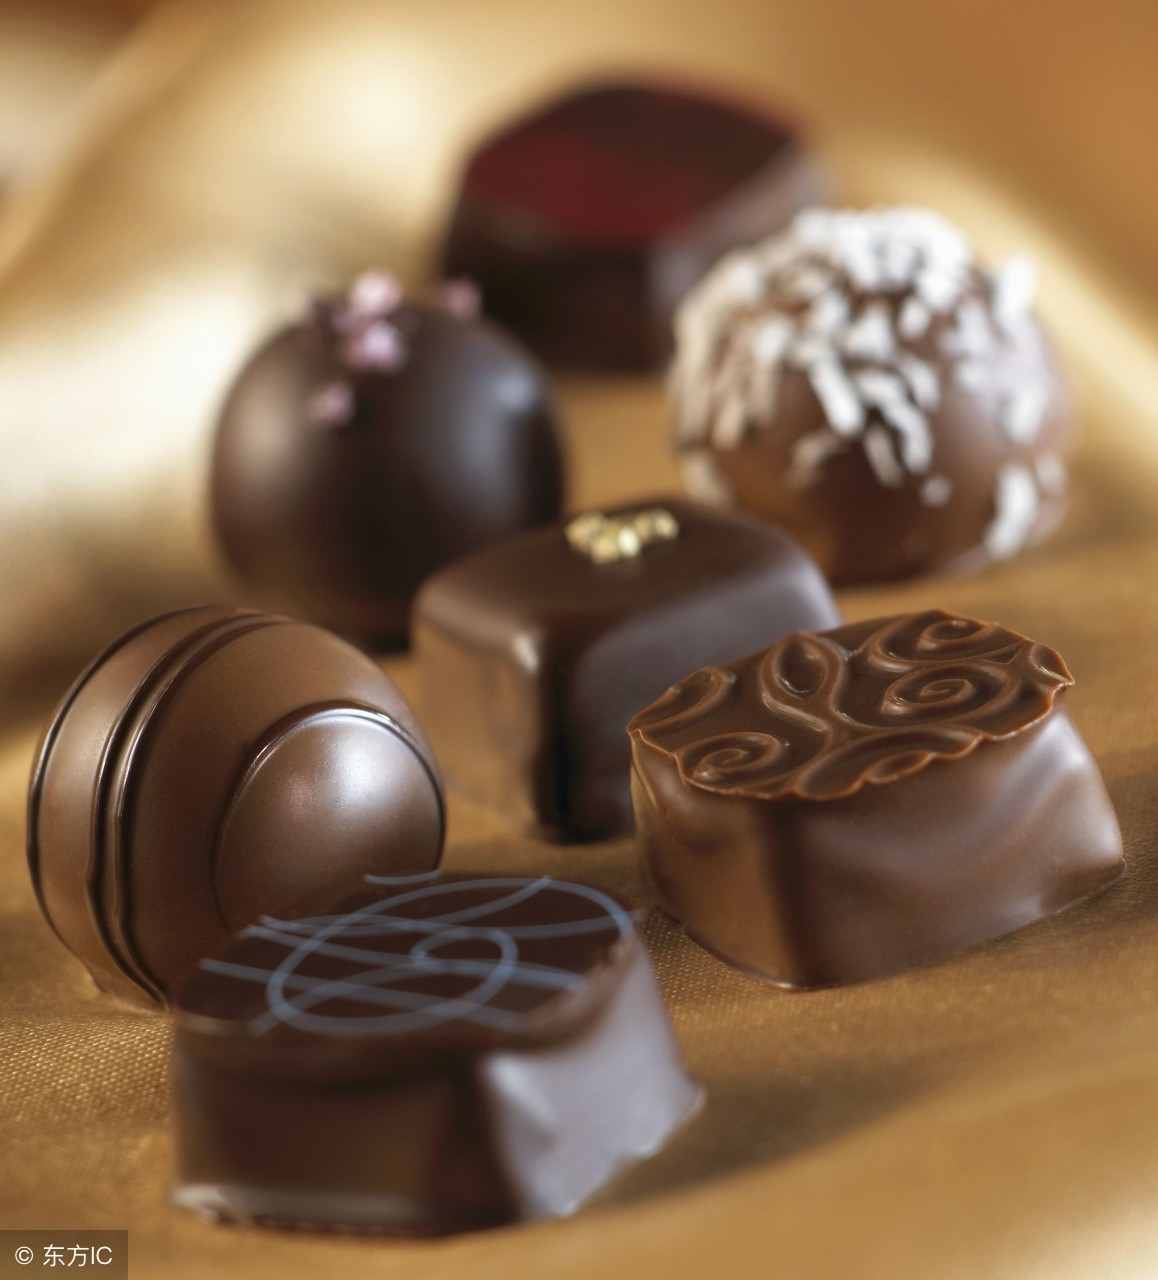 不同类型的巧克力代表的寓意也不同